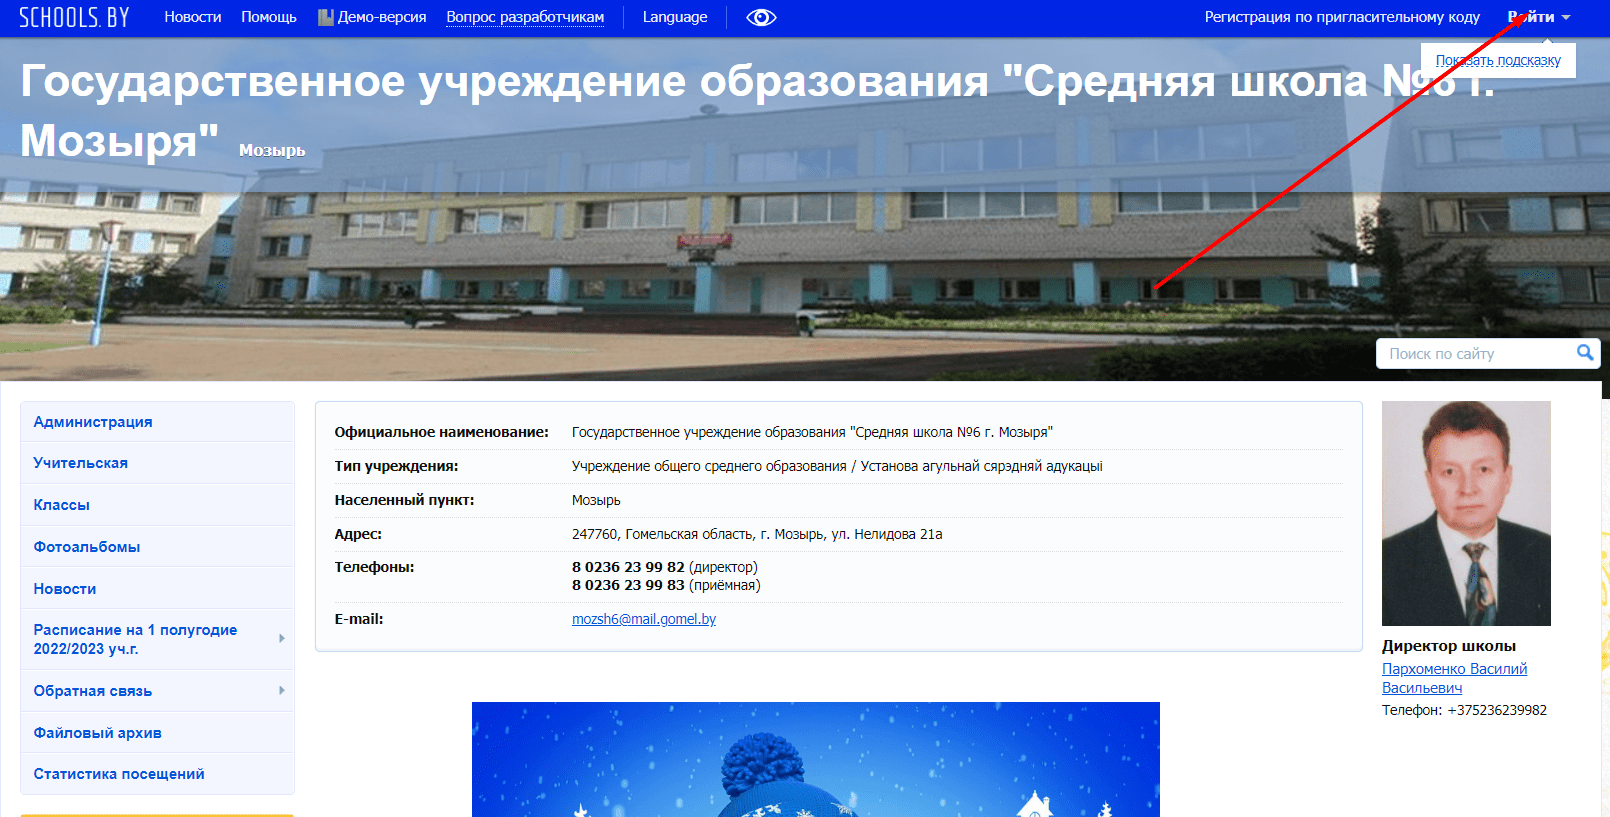 Средняя школа №6 г. Мозыря (6mozyr.schools.by)